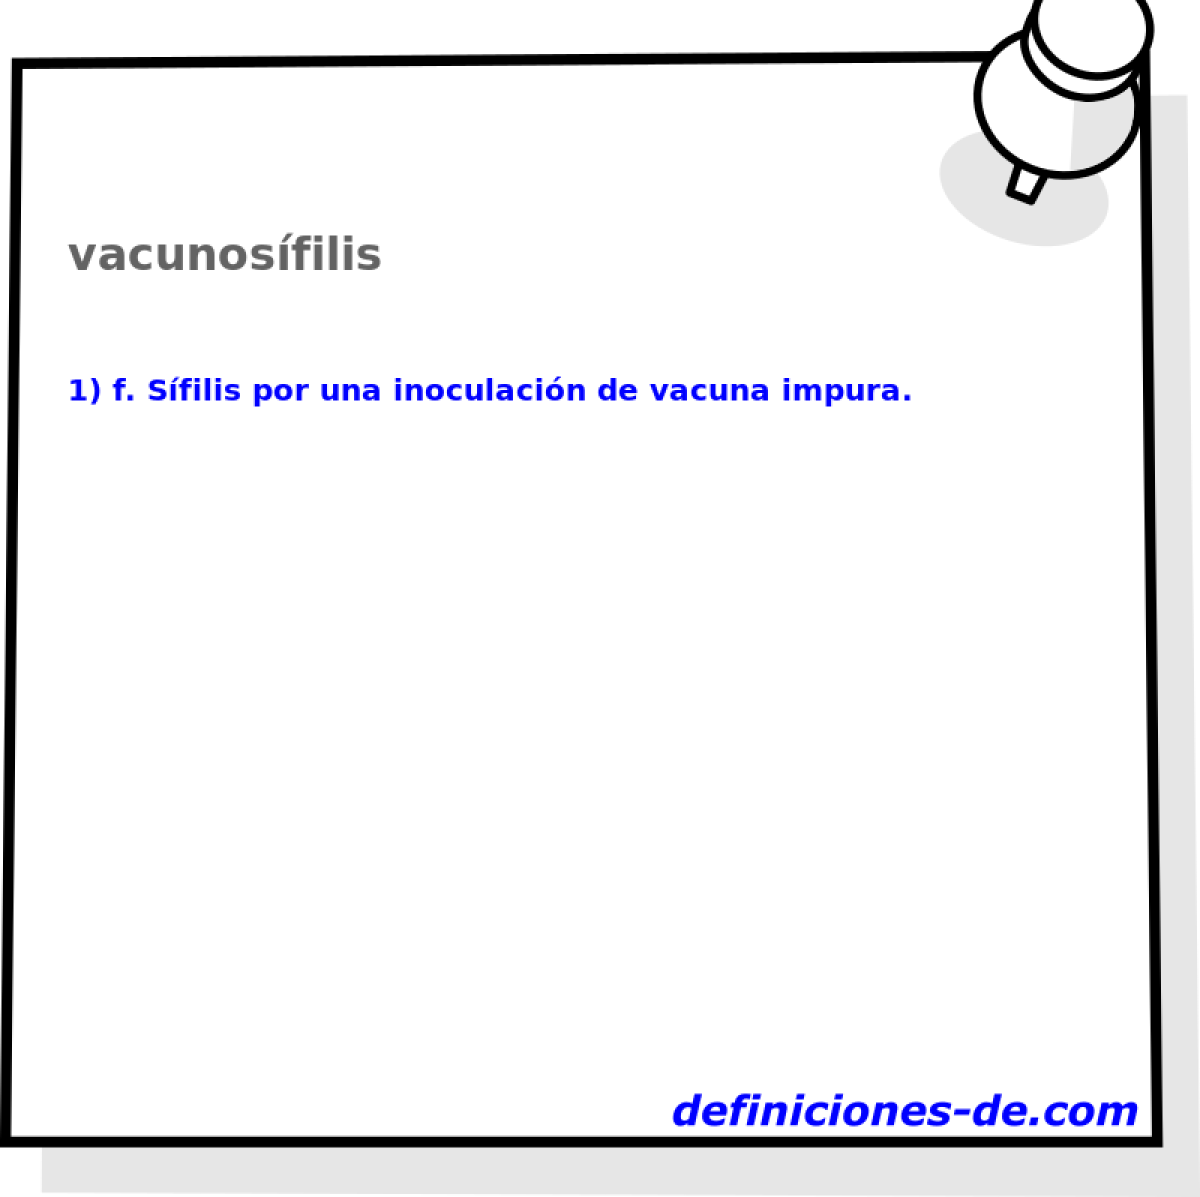 vacunosfilis 